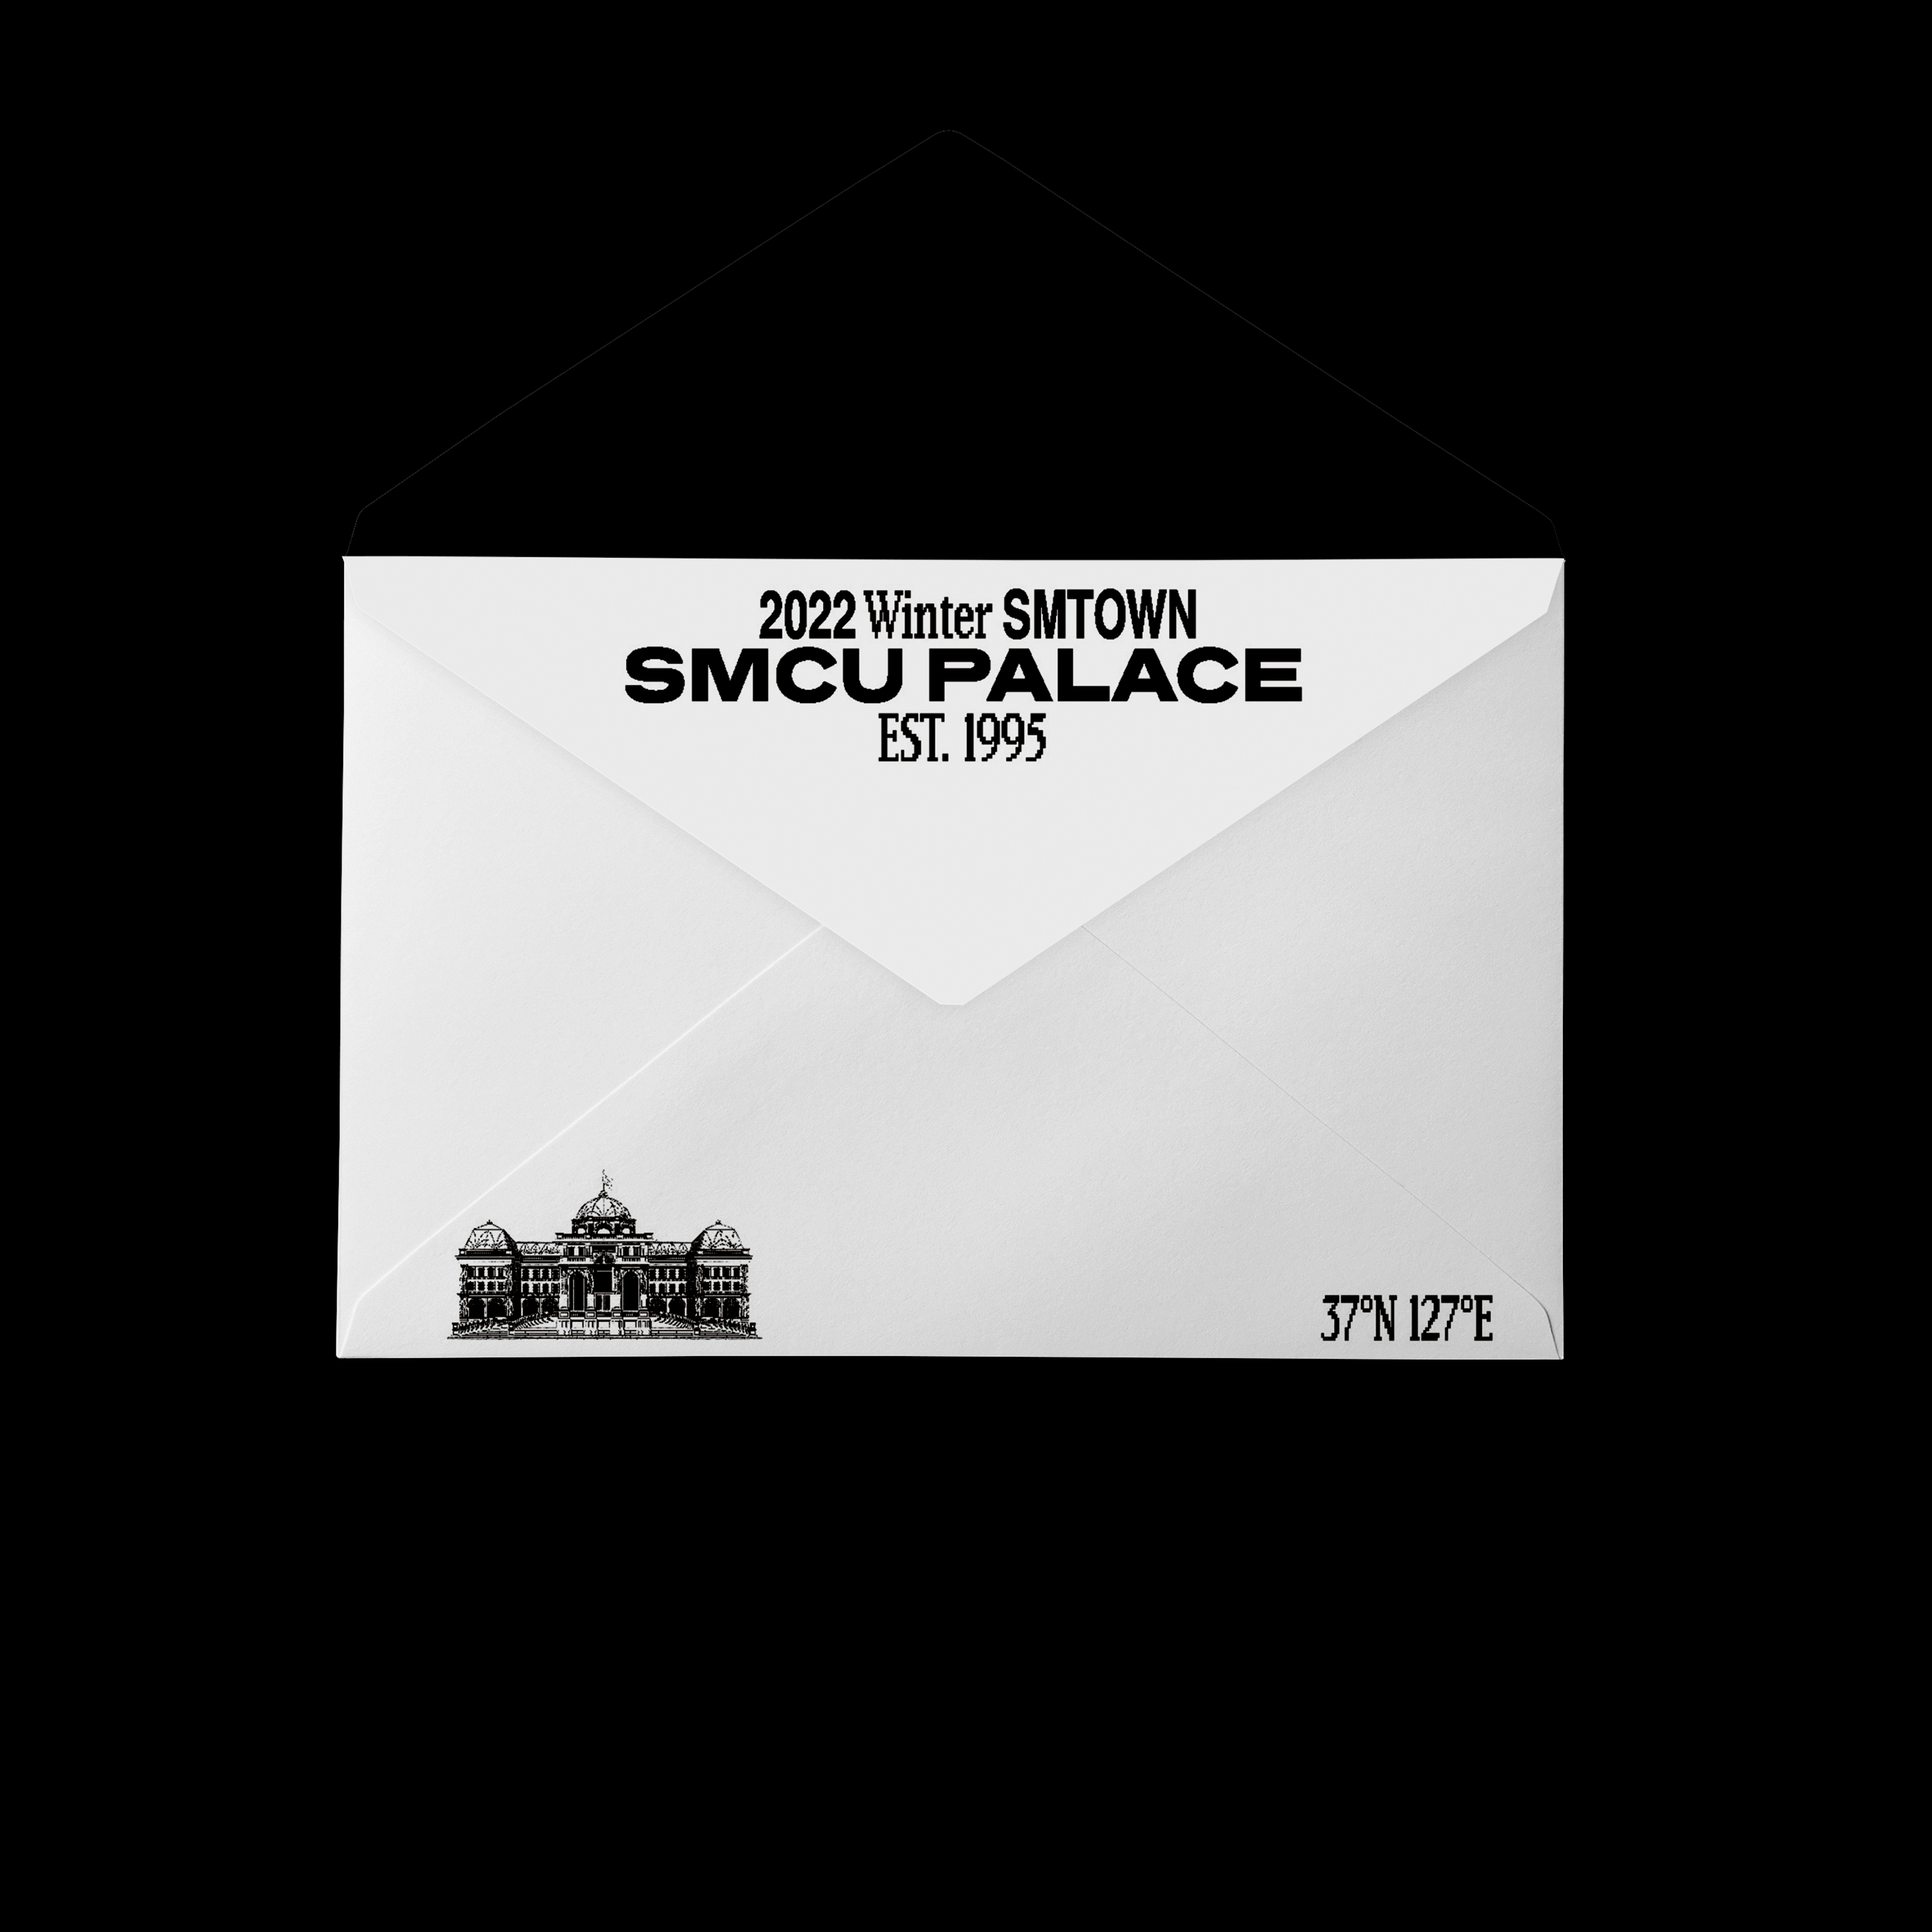 [全款 裸专] TVXQ! - 2022 Winter SMTOWN : SMCU PALACE (GUEST. TVXQ!) (Membership Card Ver.) _LiquorMax